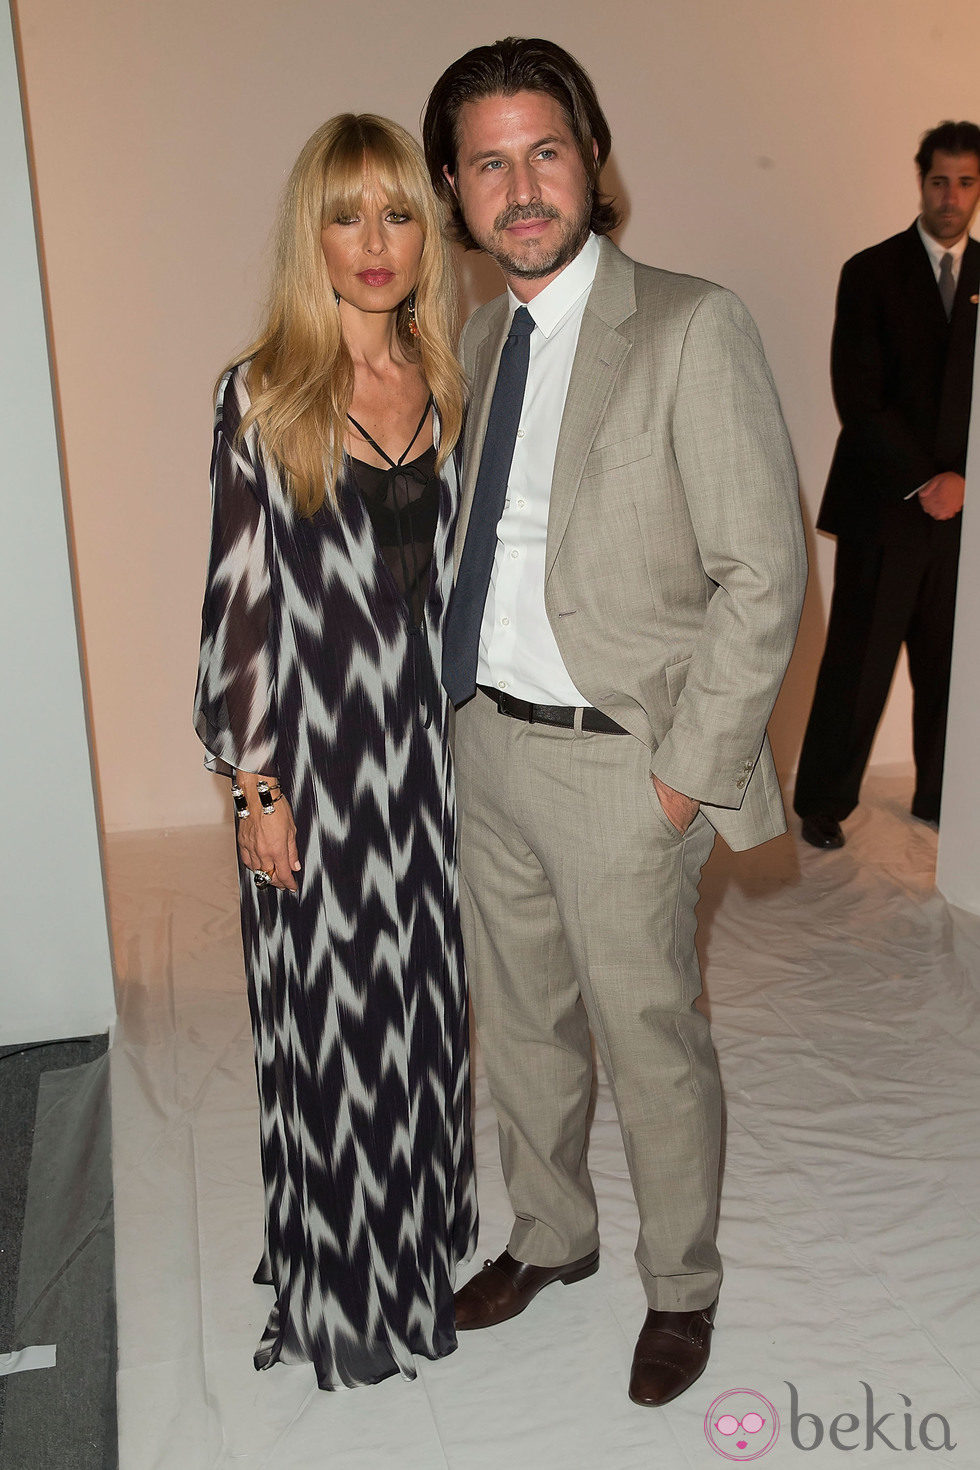 Rachel Zoe con su marido Rodger Berman en su desfile primavera/verano 2014 de la Semana de la Moda de Nueva York